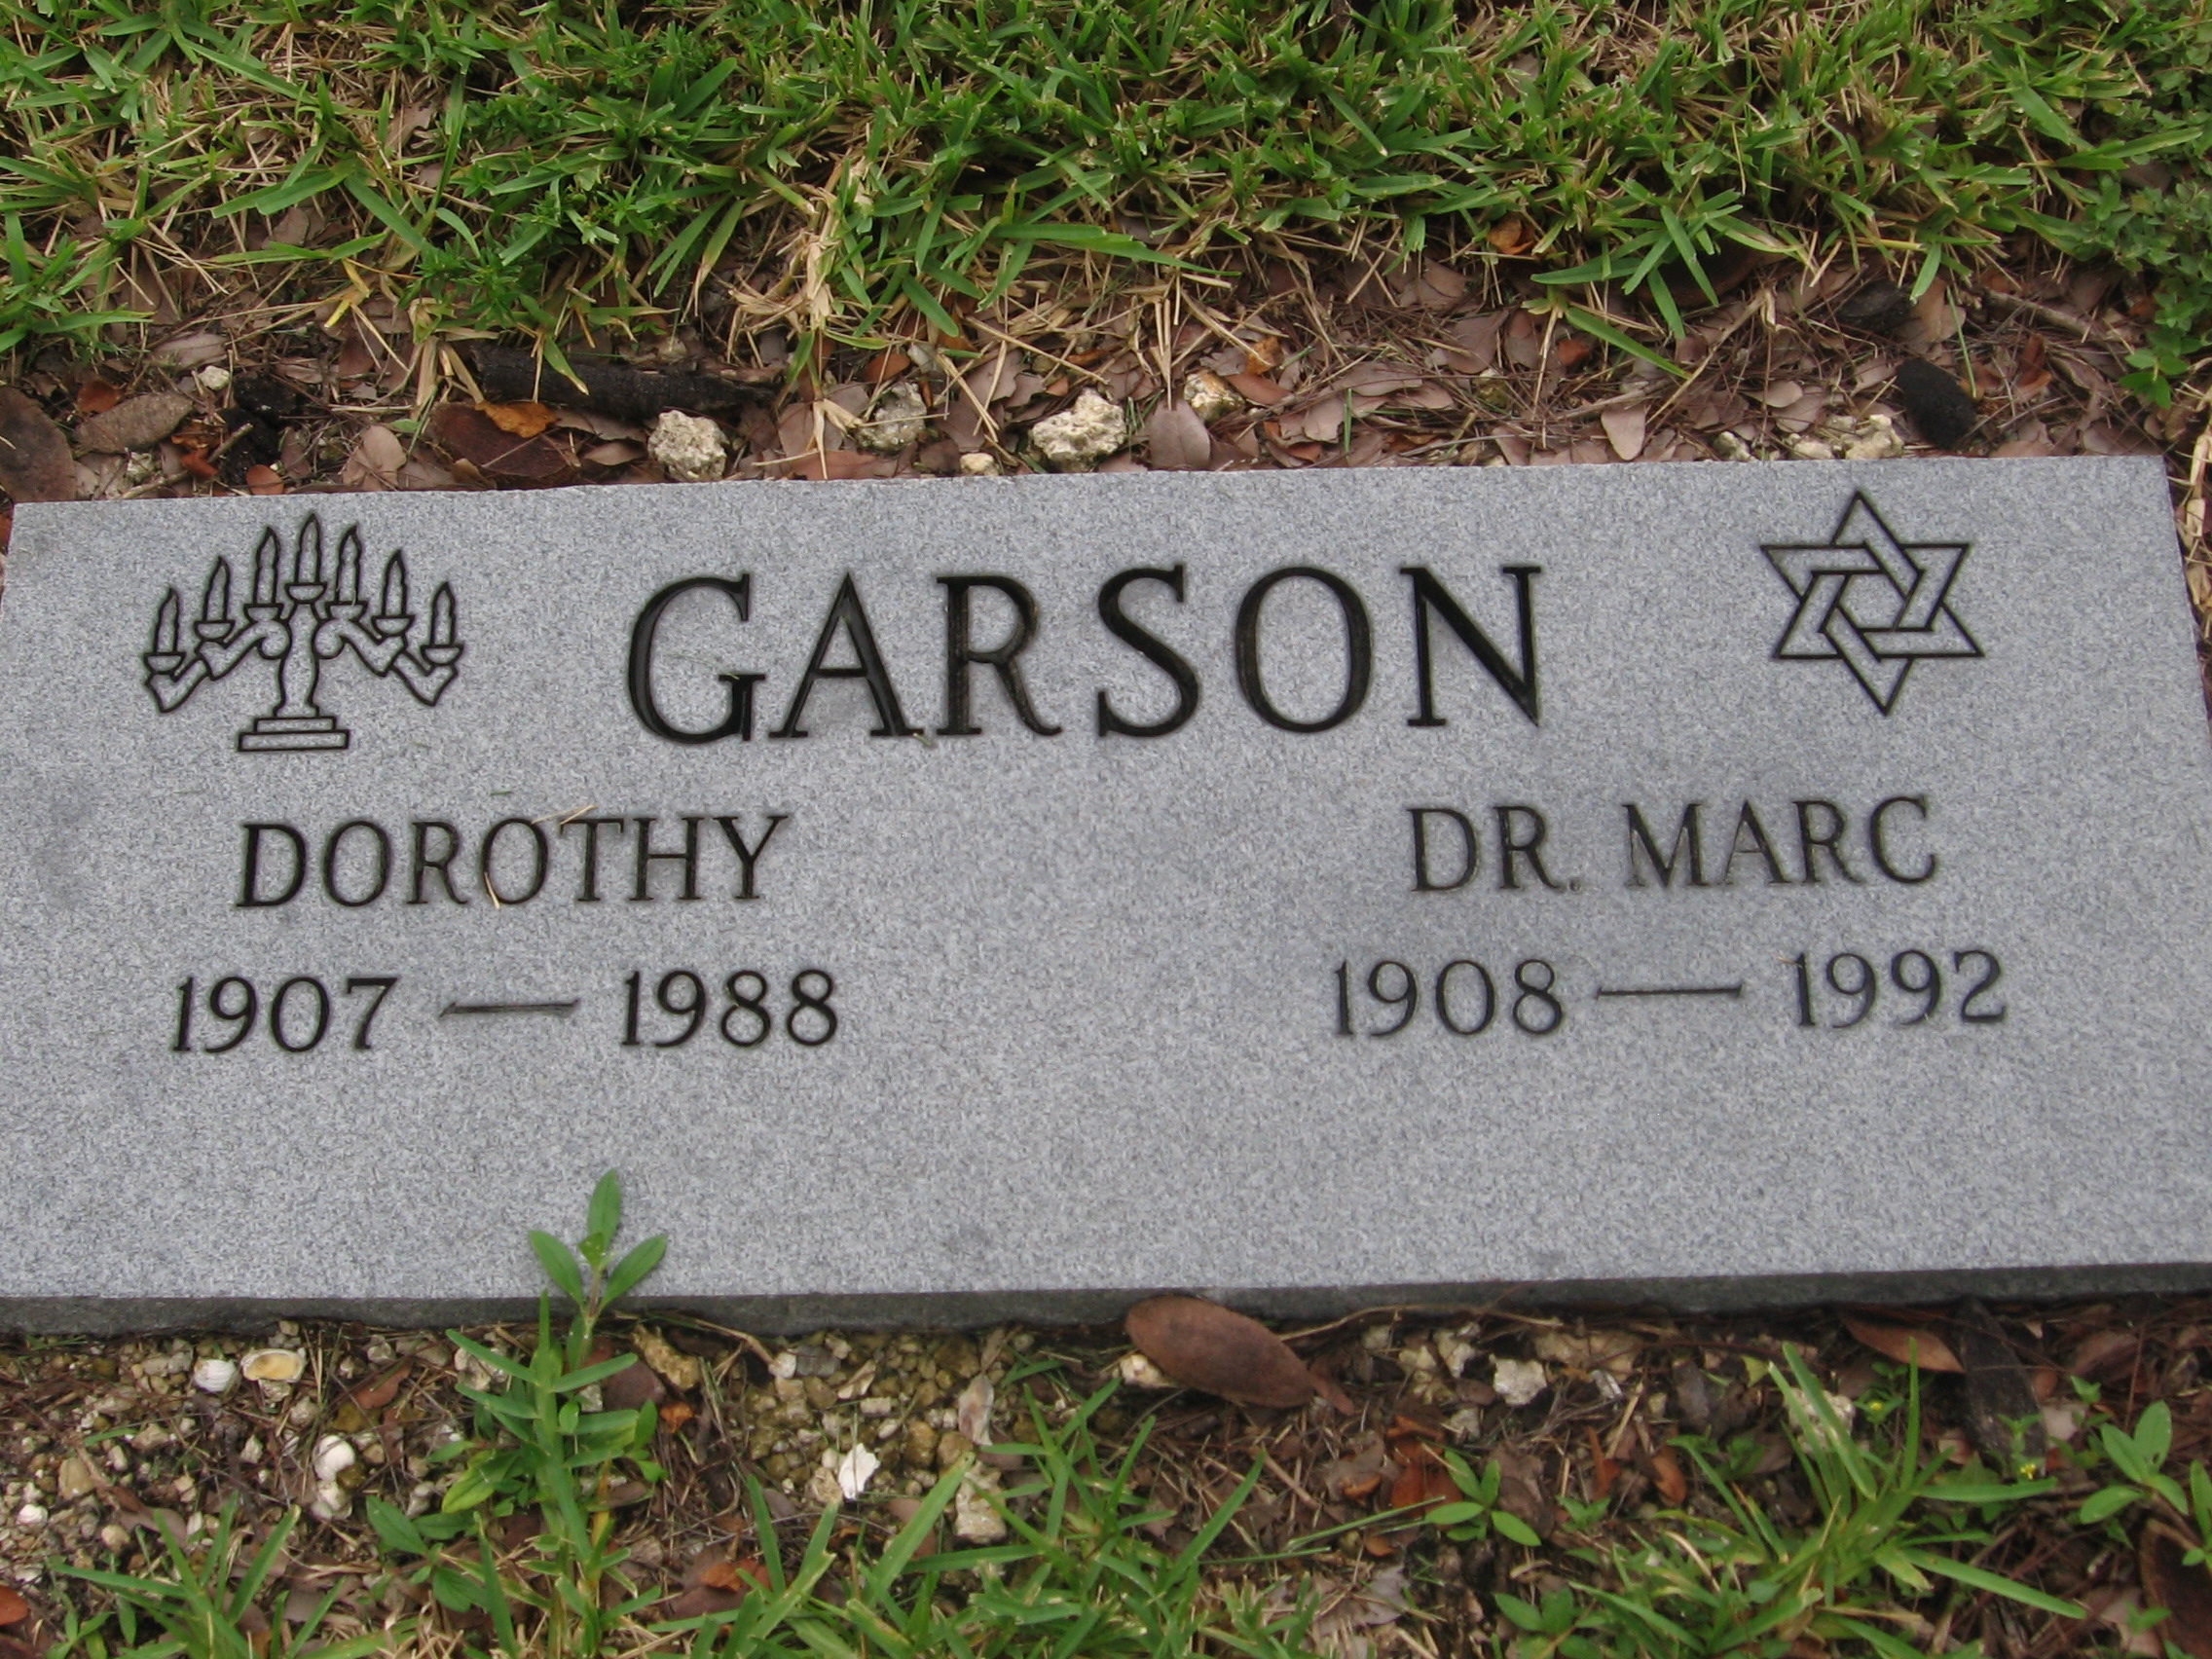 Dorothy Garson